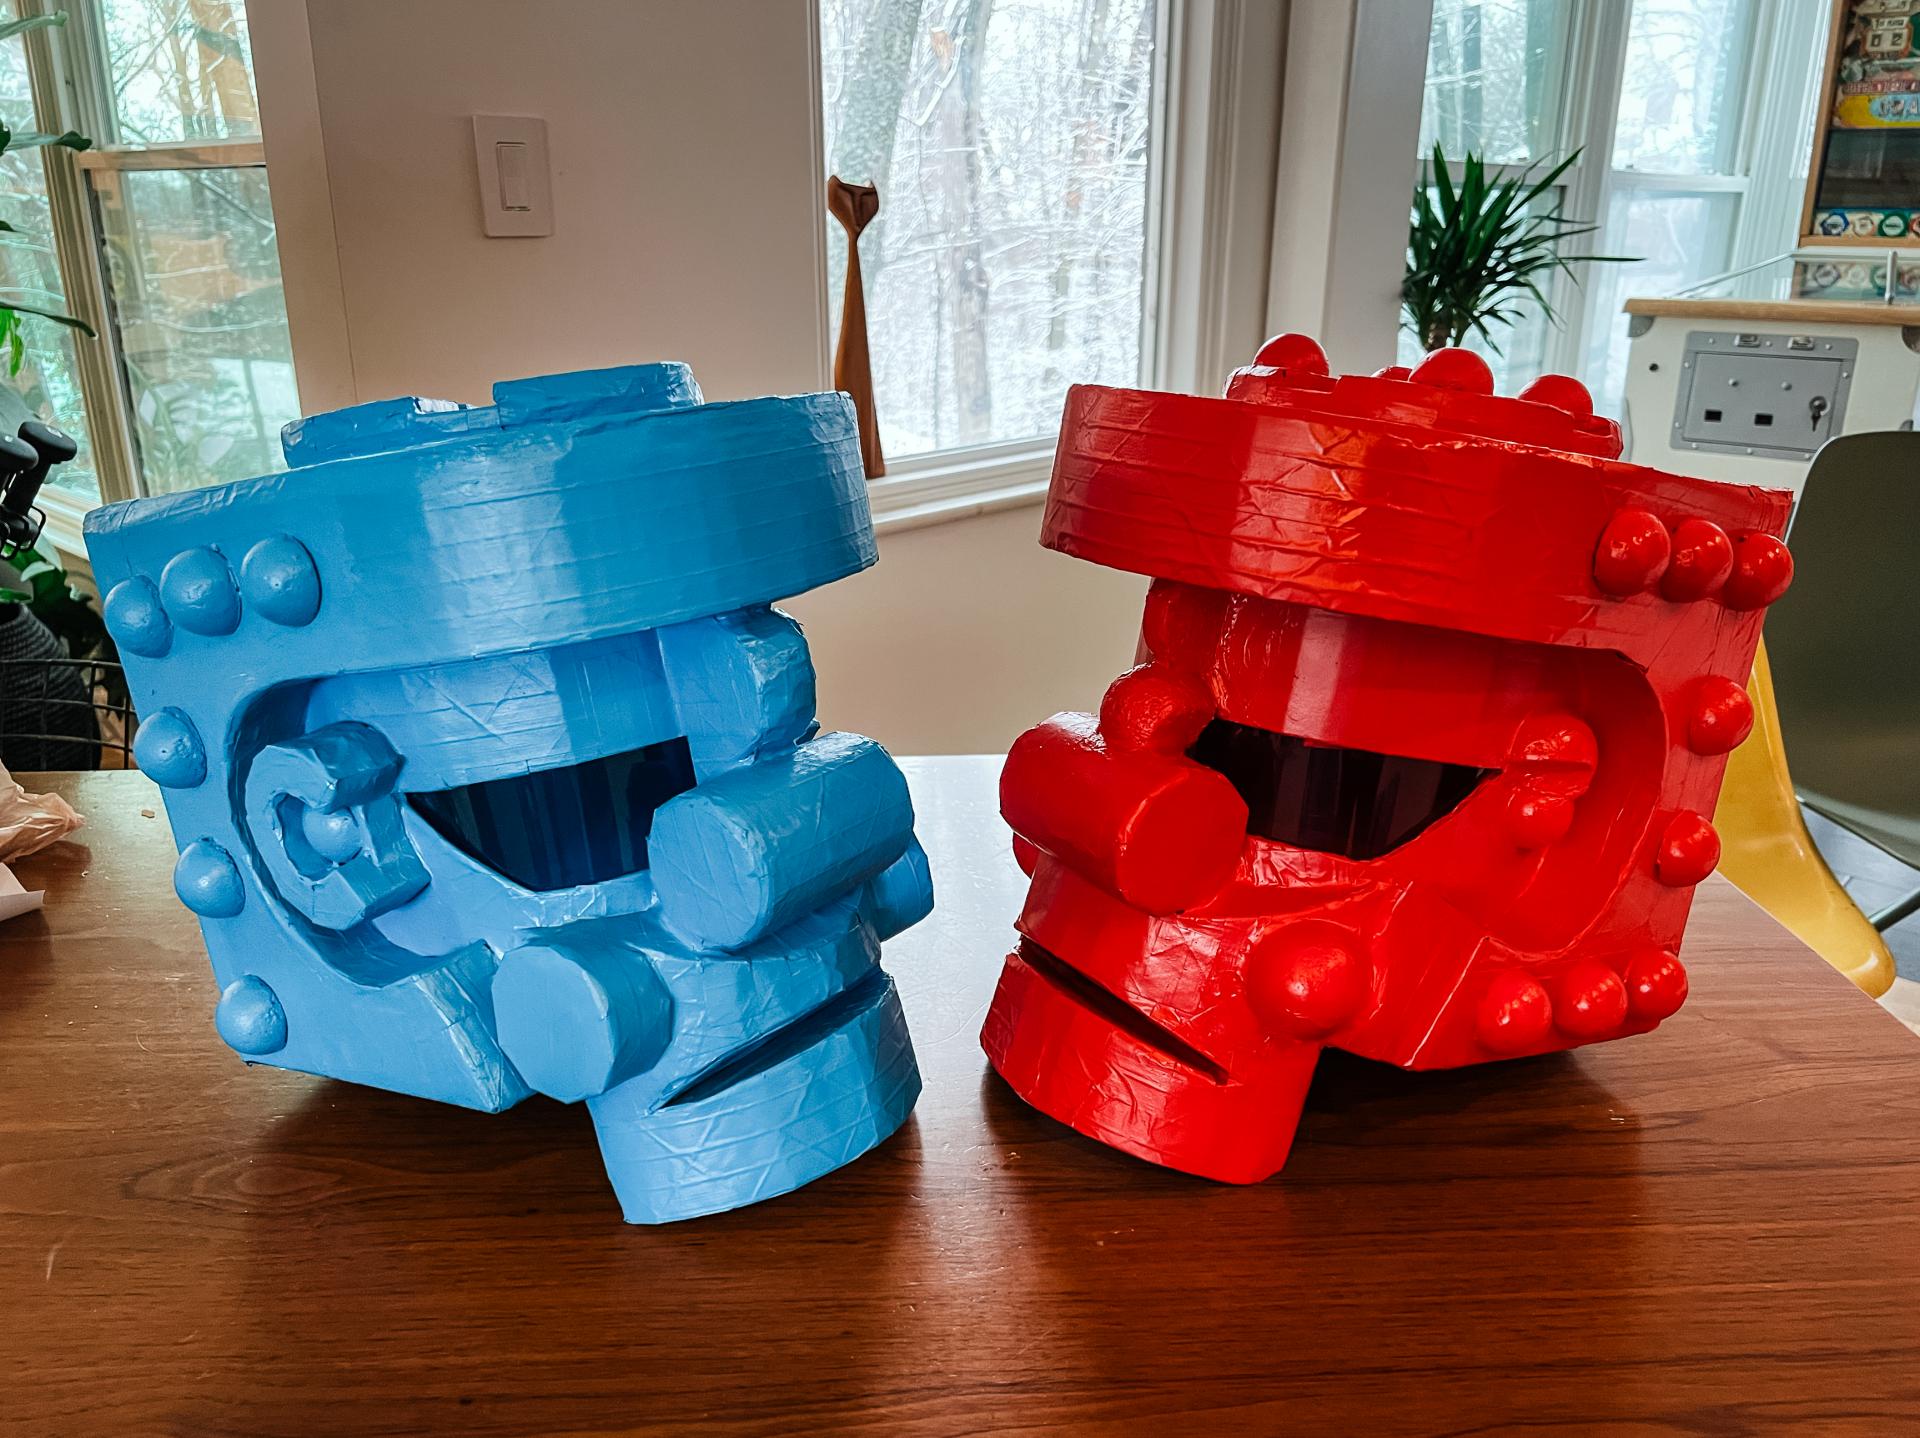 cardboard heads for Rock 'em Sock 'em robots